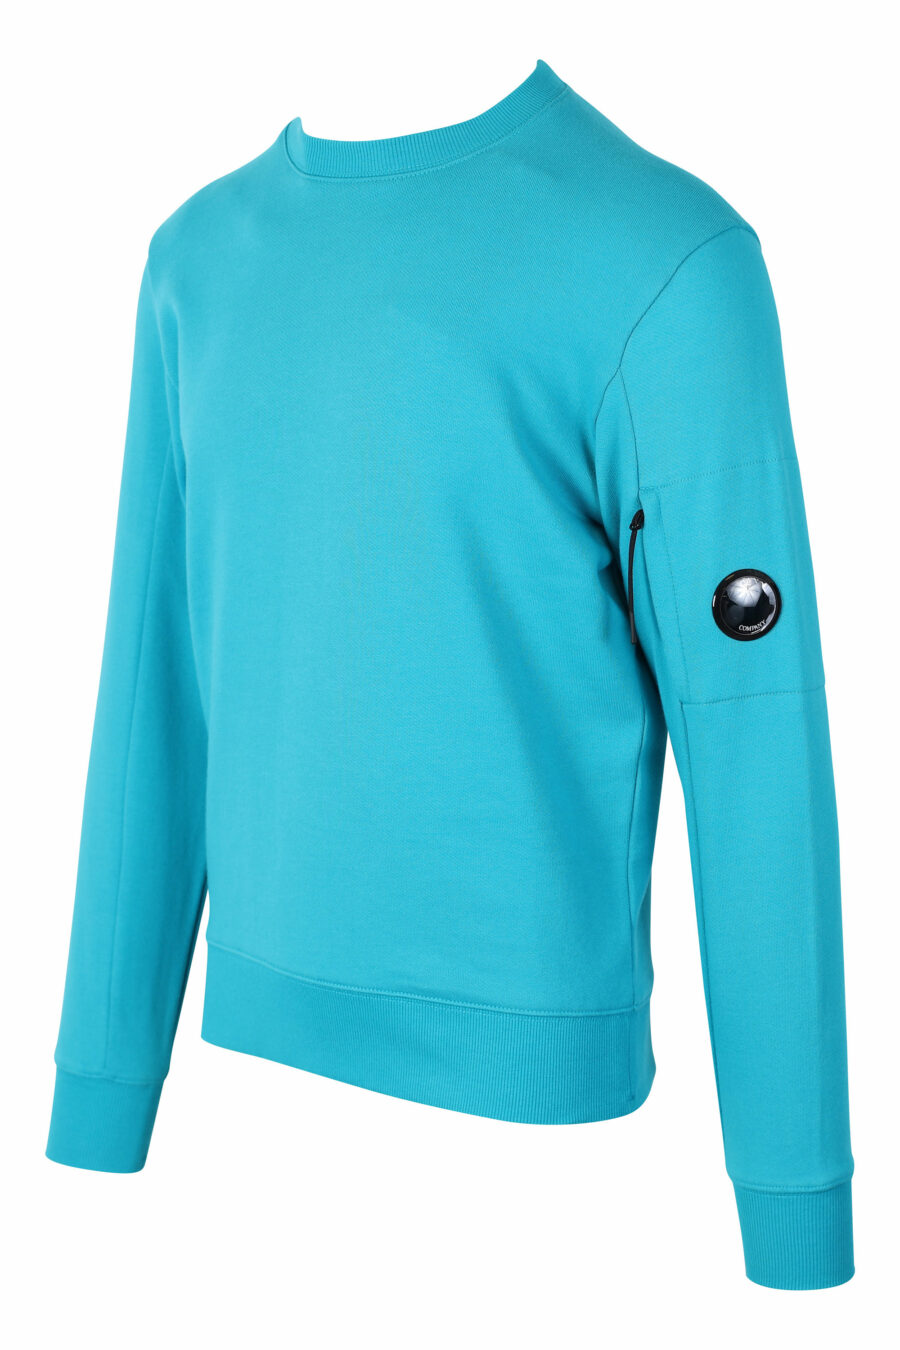 Sweat-shirt turquoise avec mini-logo circulaire sur le côté - IMG 2395